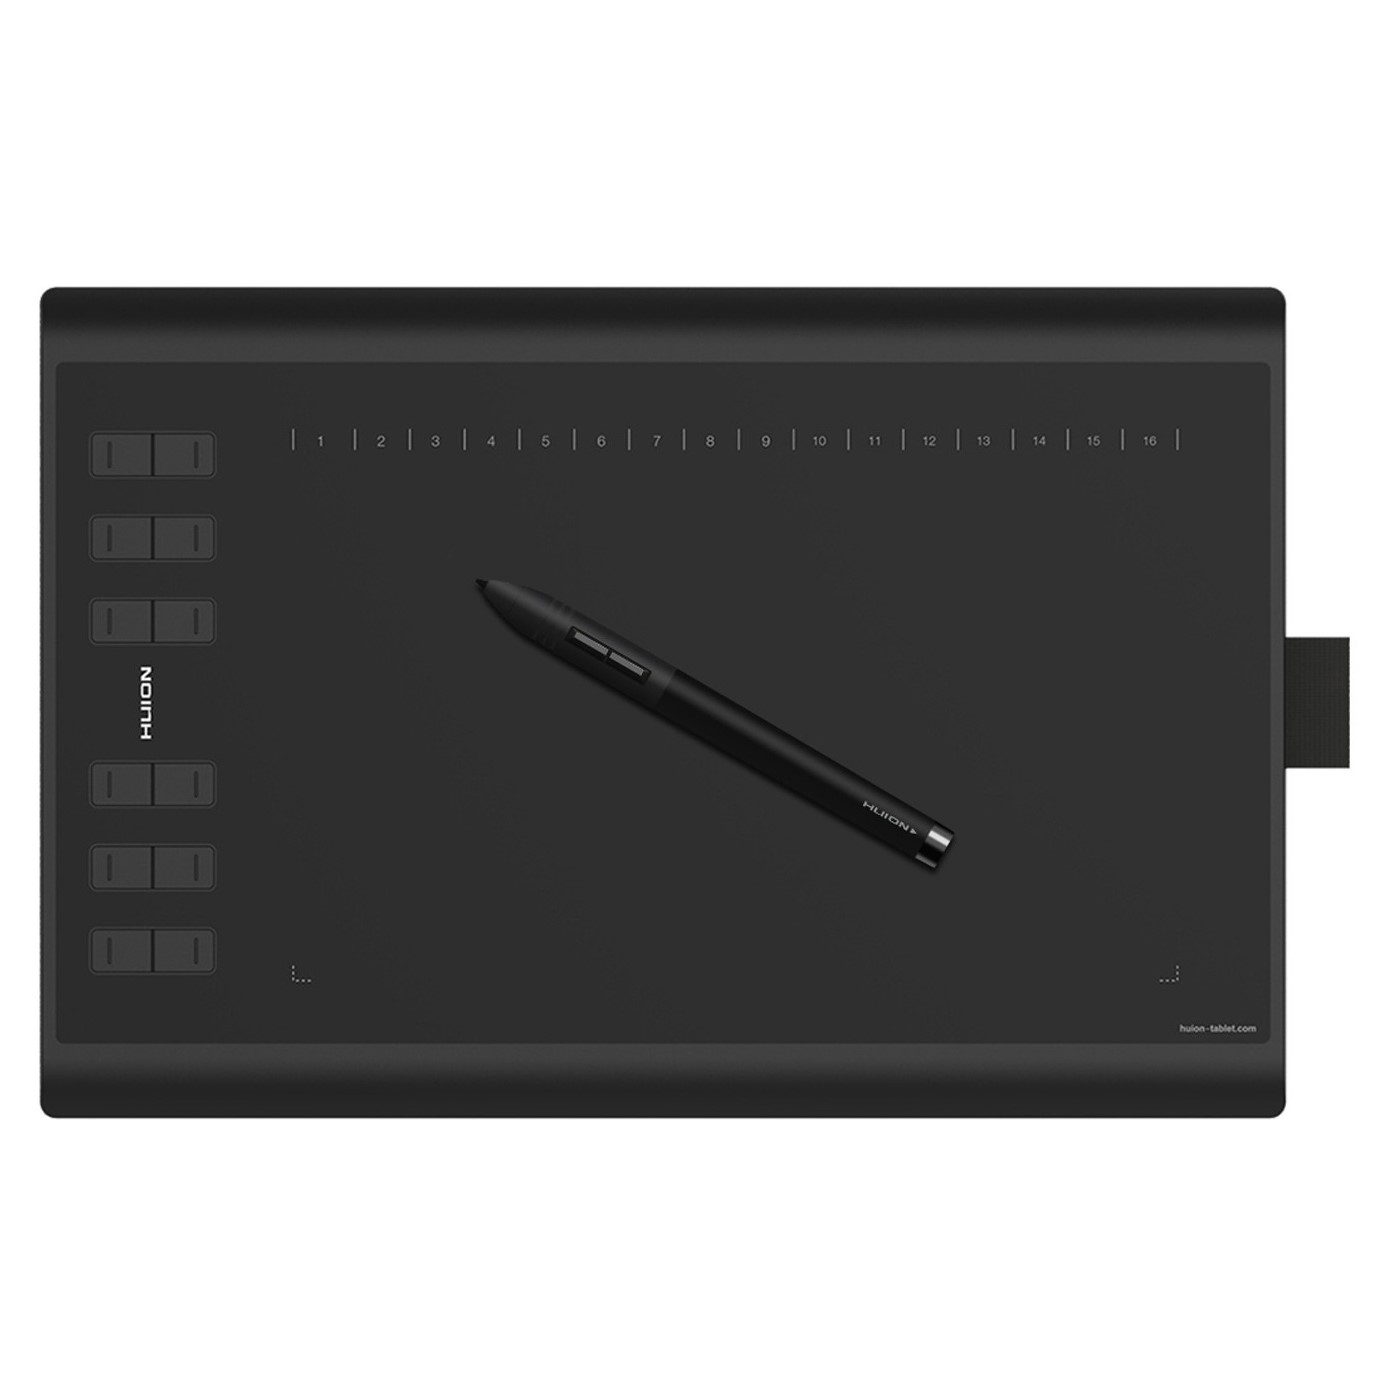 تبلت گرافیکی و قلم نوری هوئیون مدل New 1060 Plus